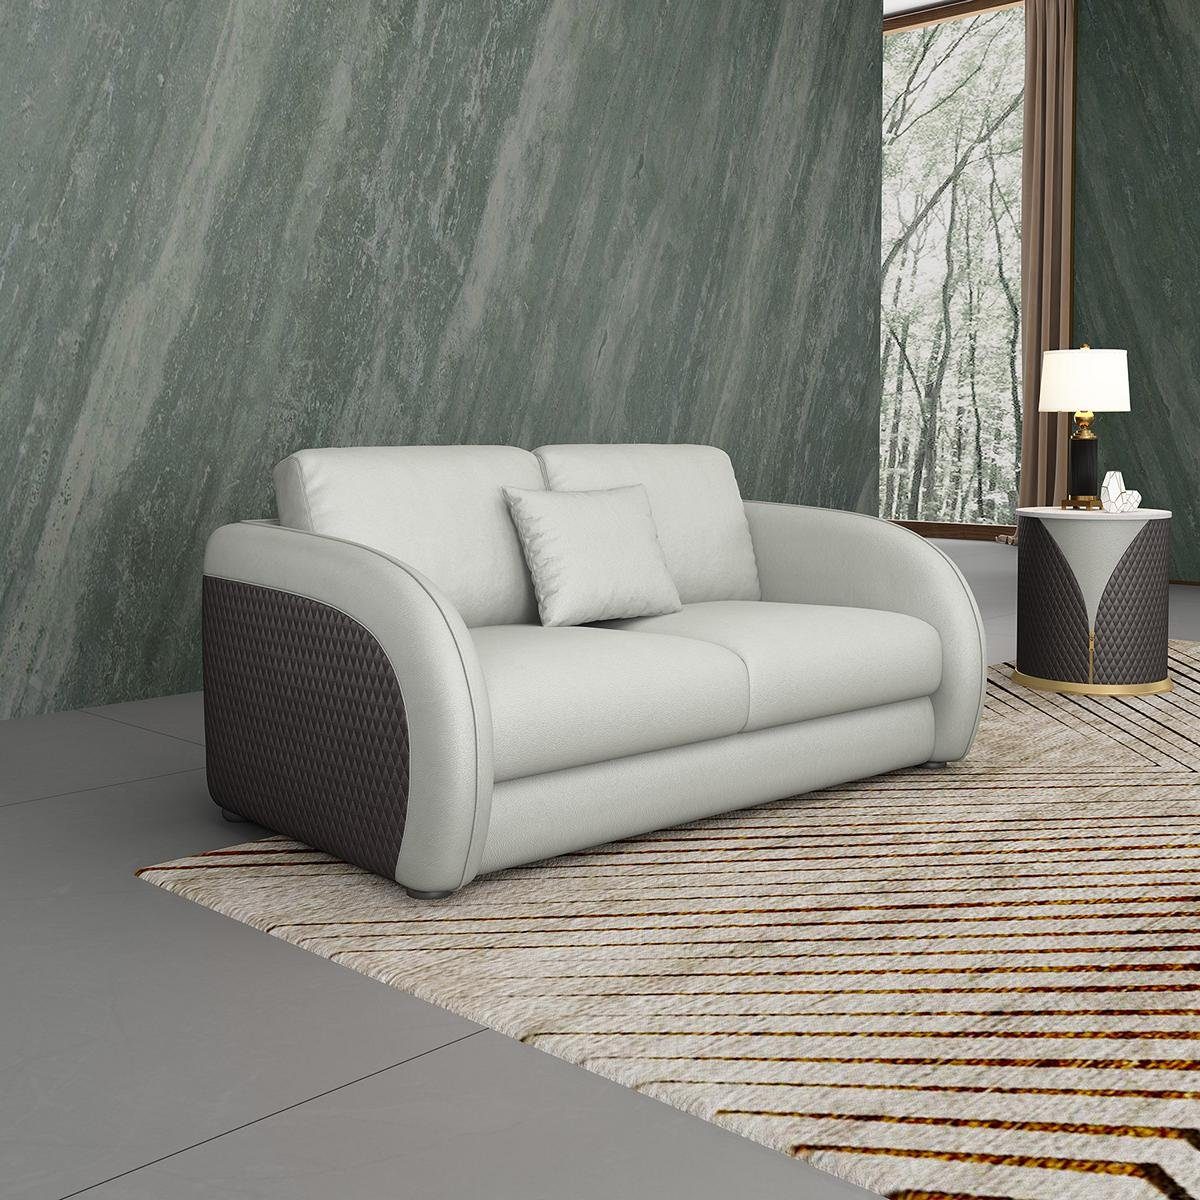 JVmoebel 2-Sitzer, Ledersofa Couch Wohnlandschaft 2 Sitzer Design Modern Sofa Weiß